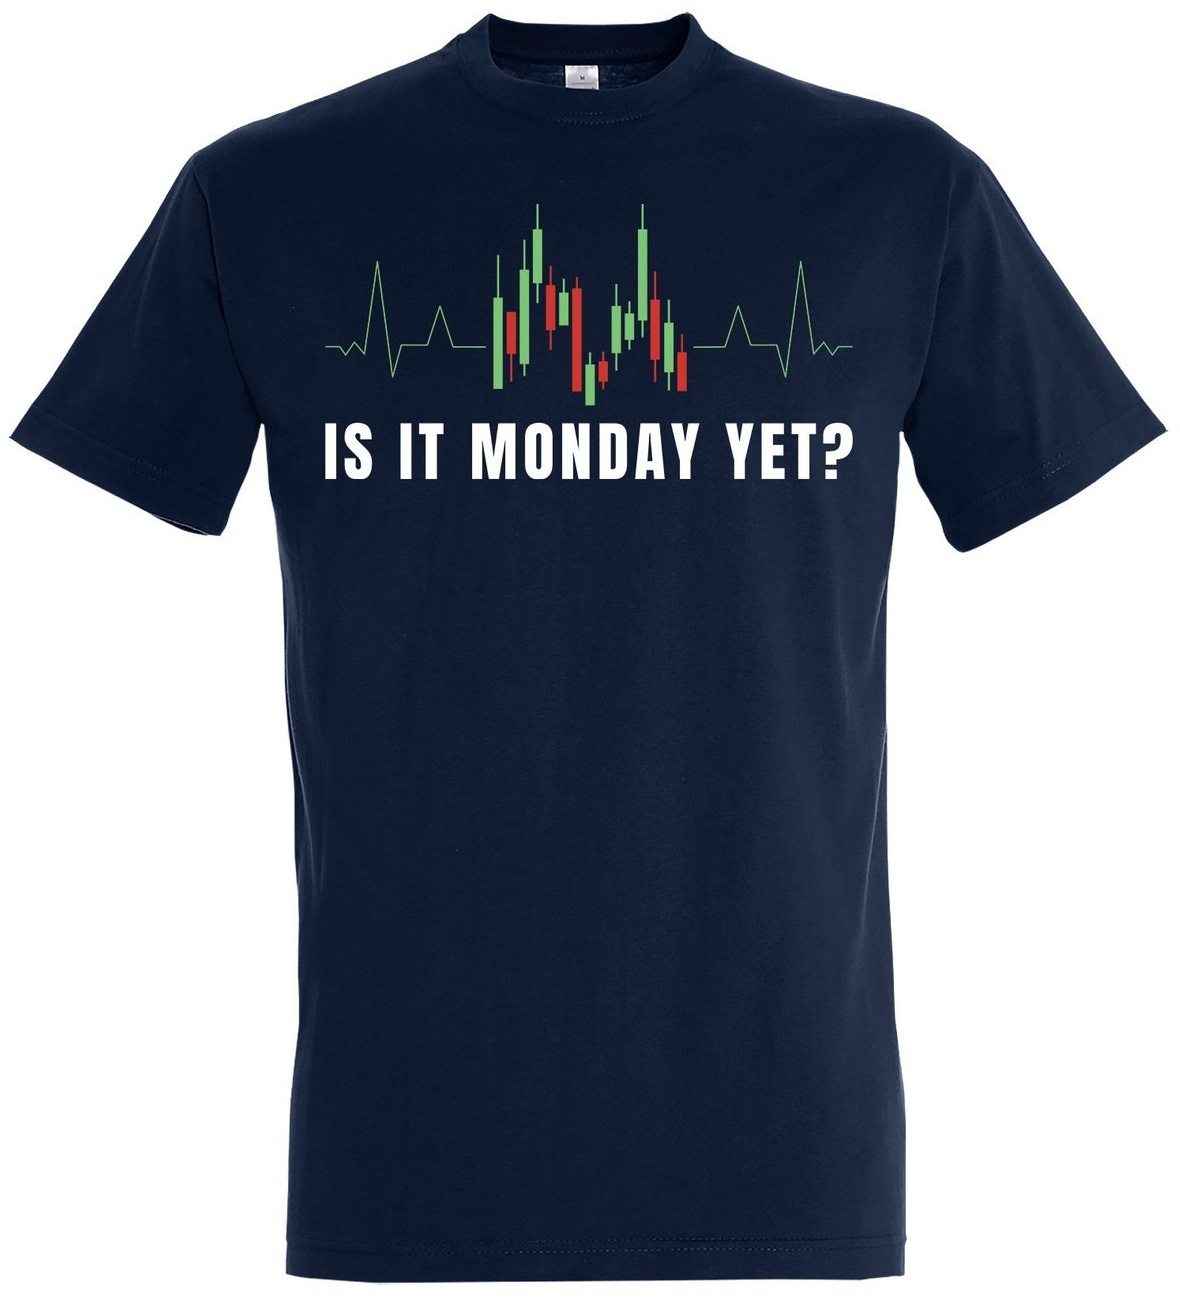 Youth Designz Print-Shirt "Is It Monday Yet?" Herren Shirt mit lustigem Spruch blau S